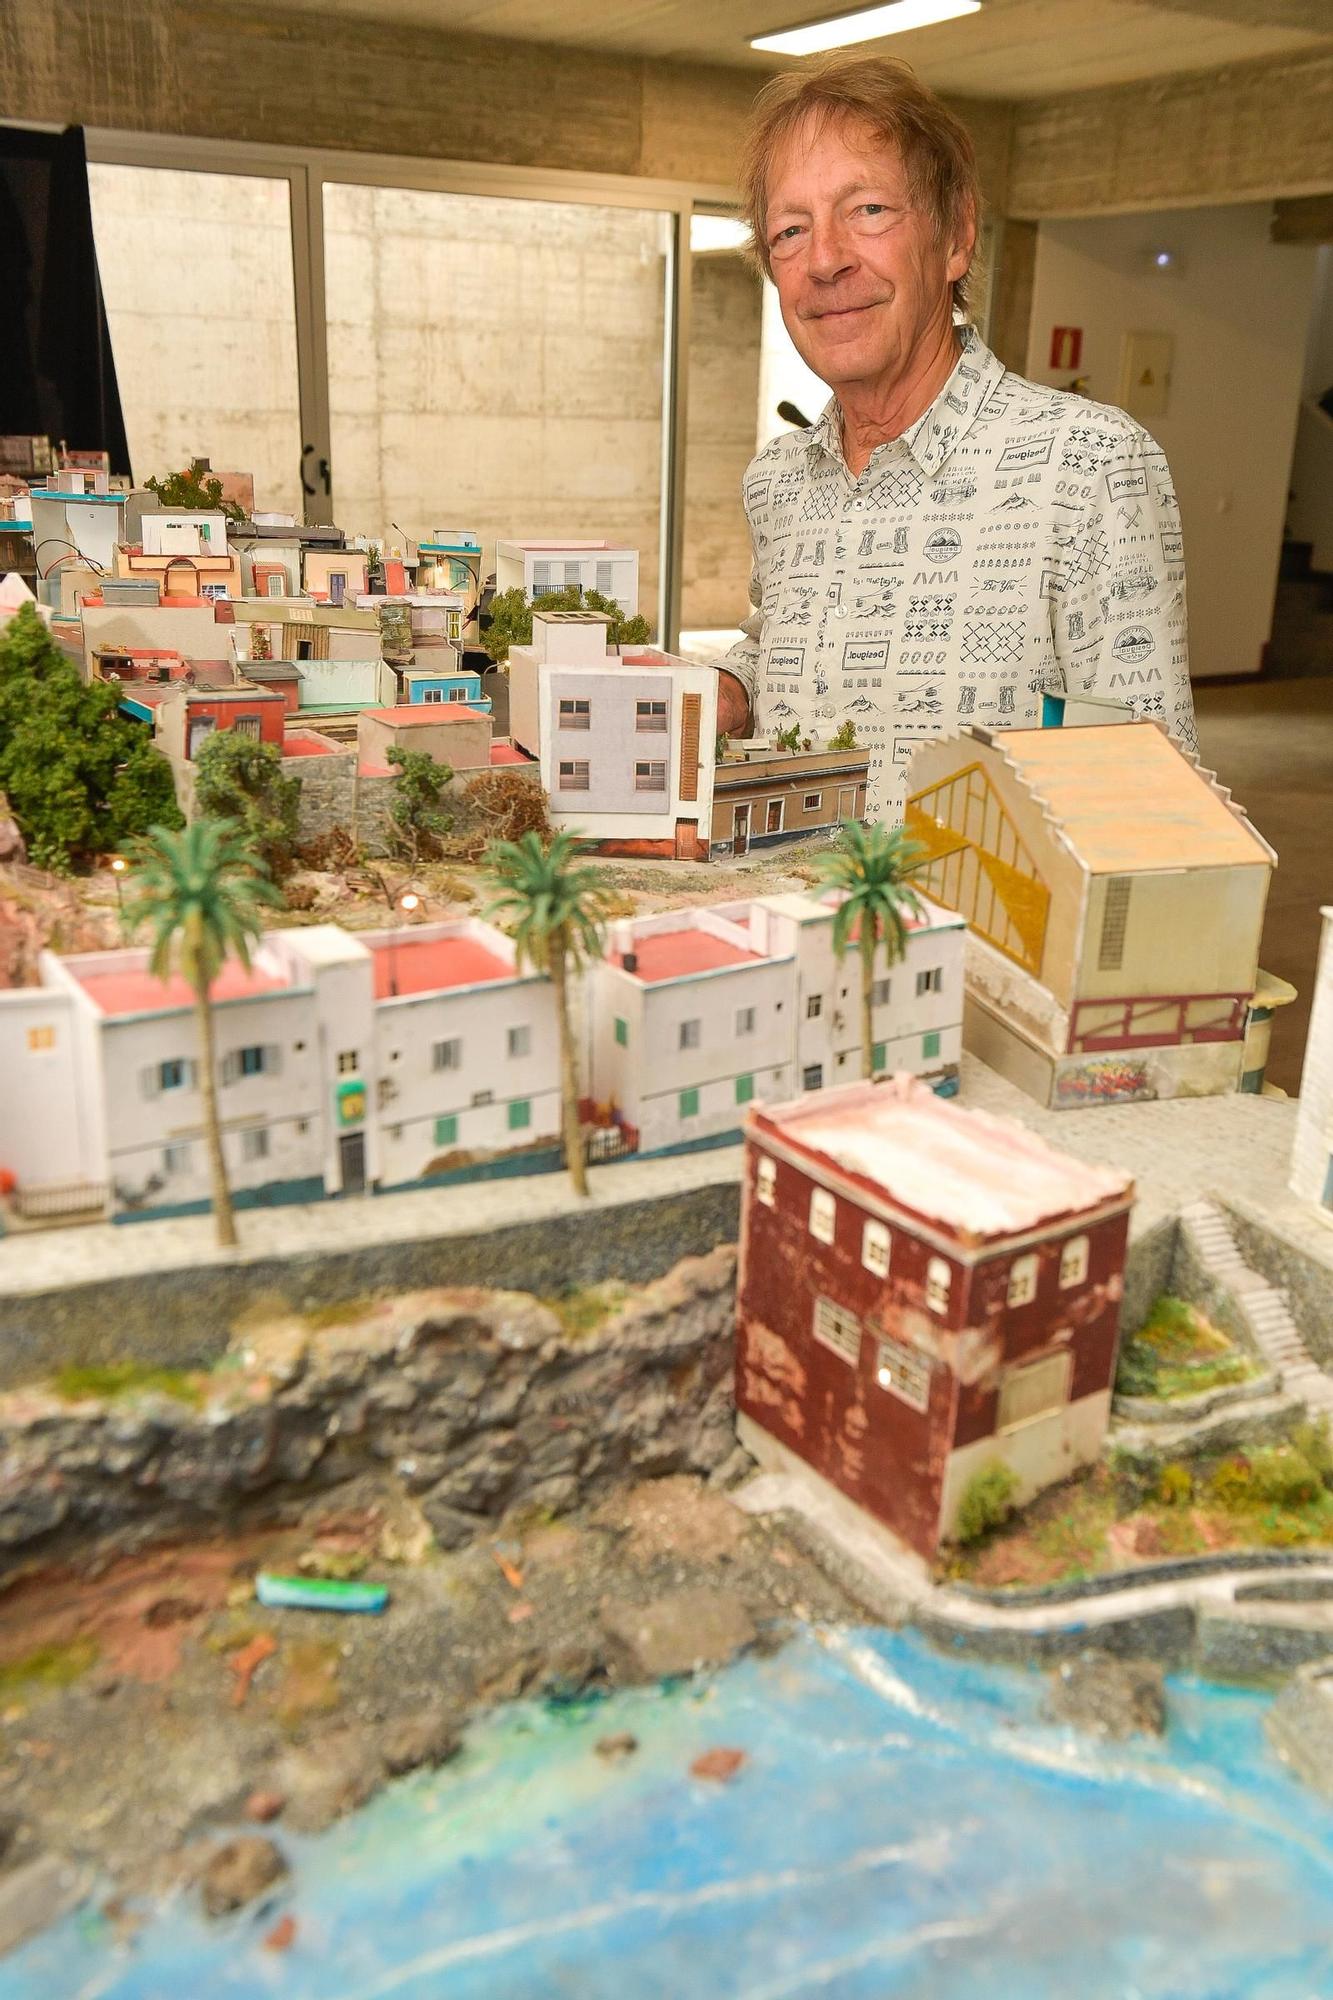 Exposición en miniatura de La Isleta